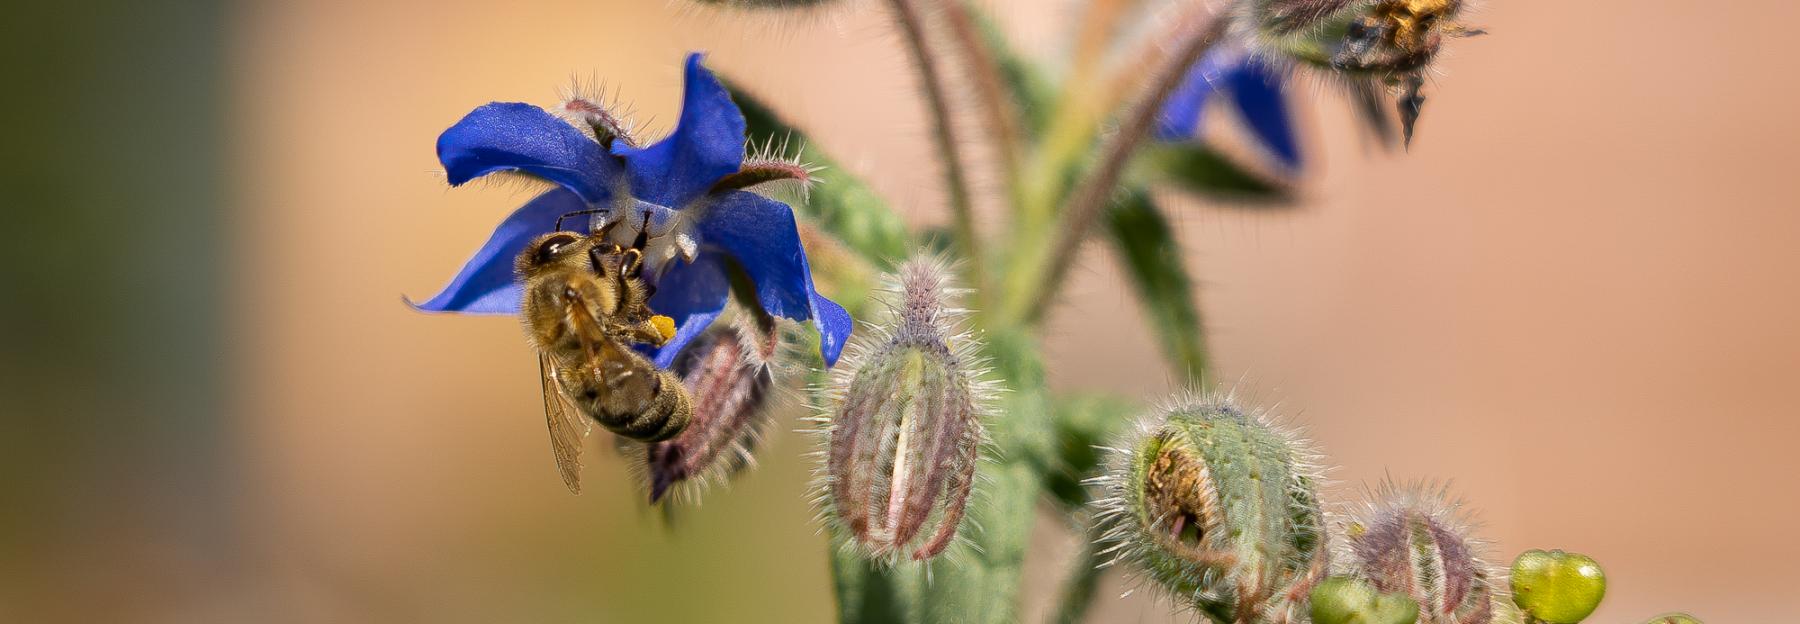 Biene beim Blütenbesuch (Borretsch)